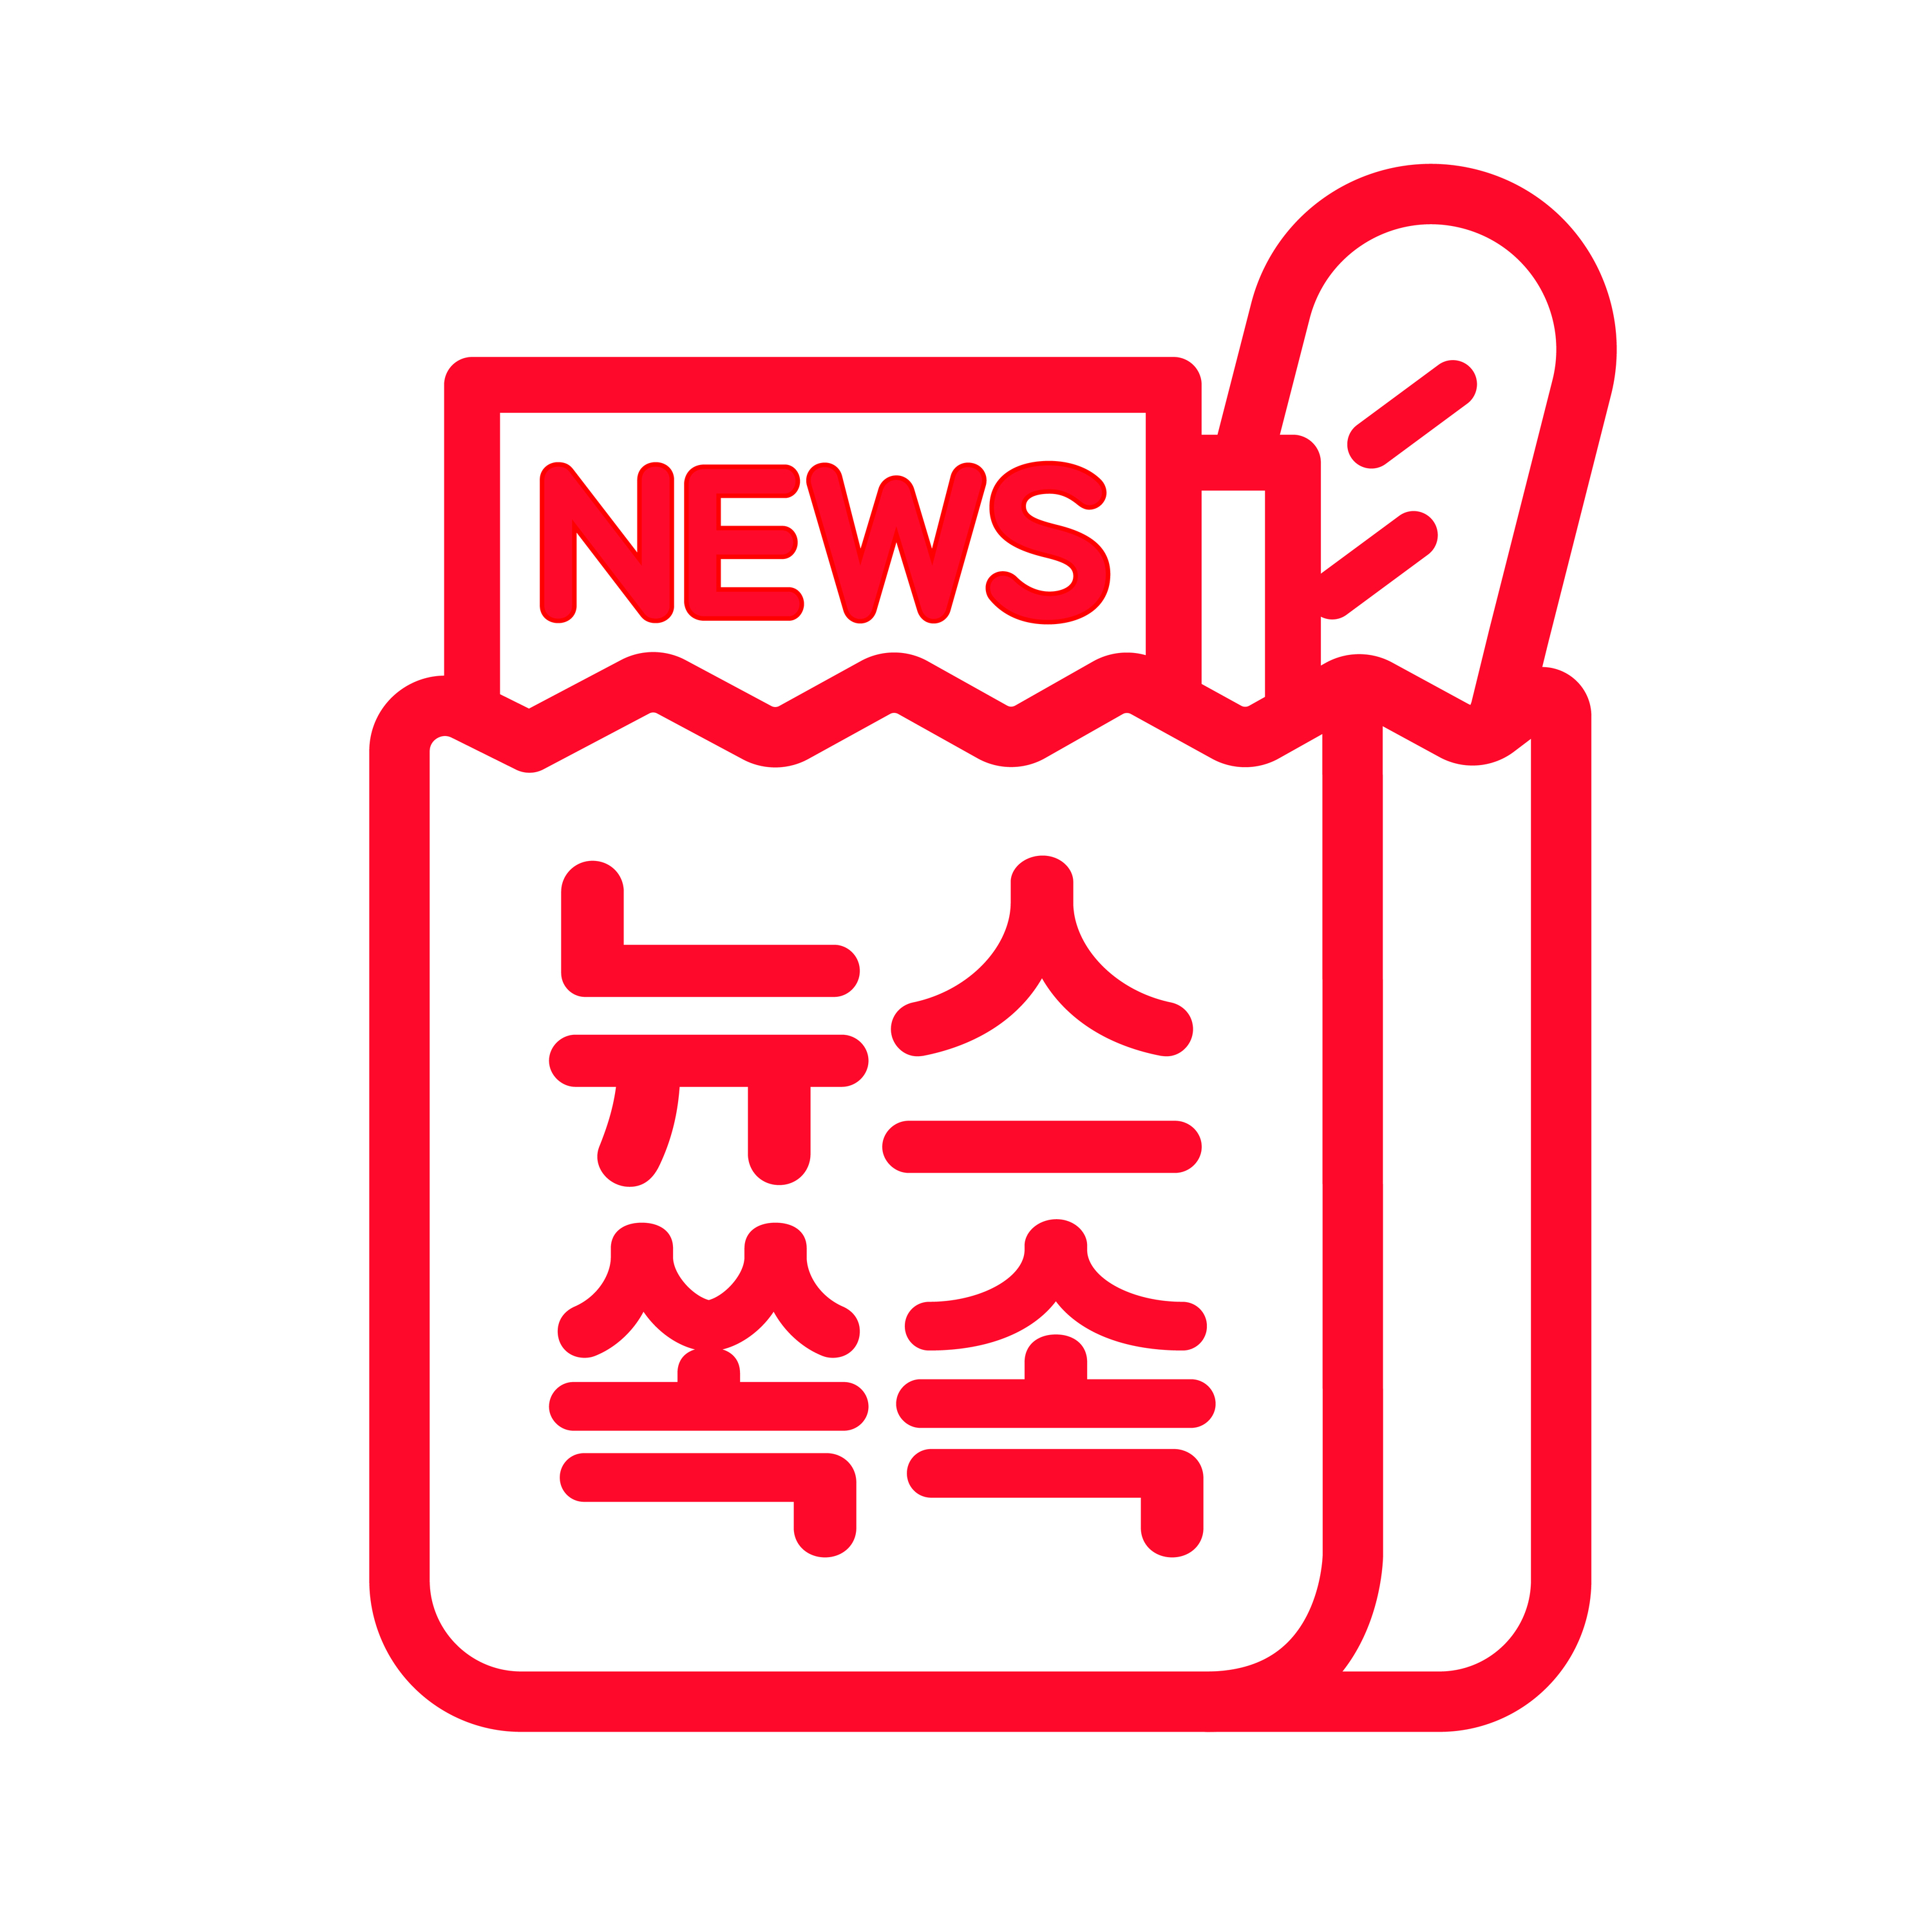 2/19(금) 배달의민족 김봉진 의장 “재산 절반 기부하겠다”